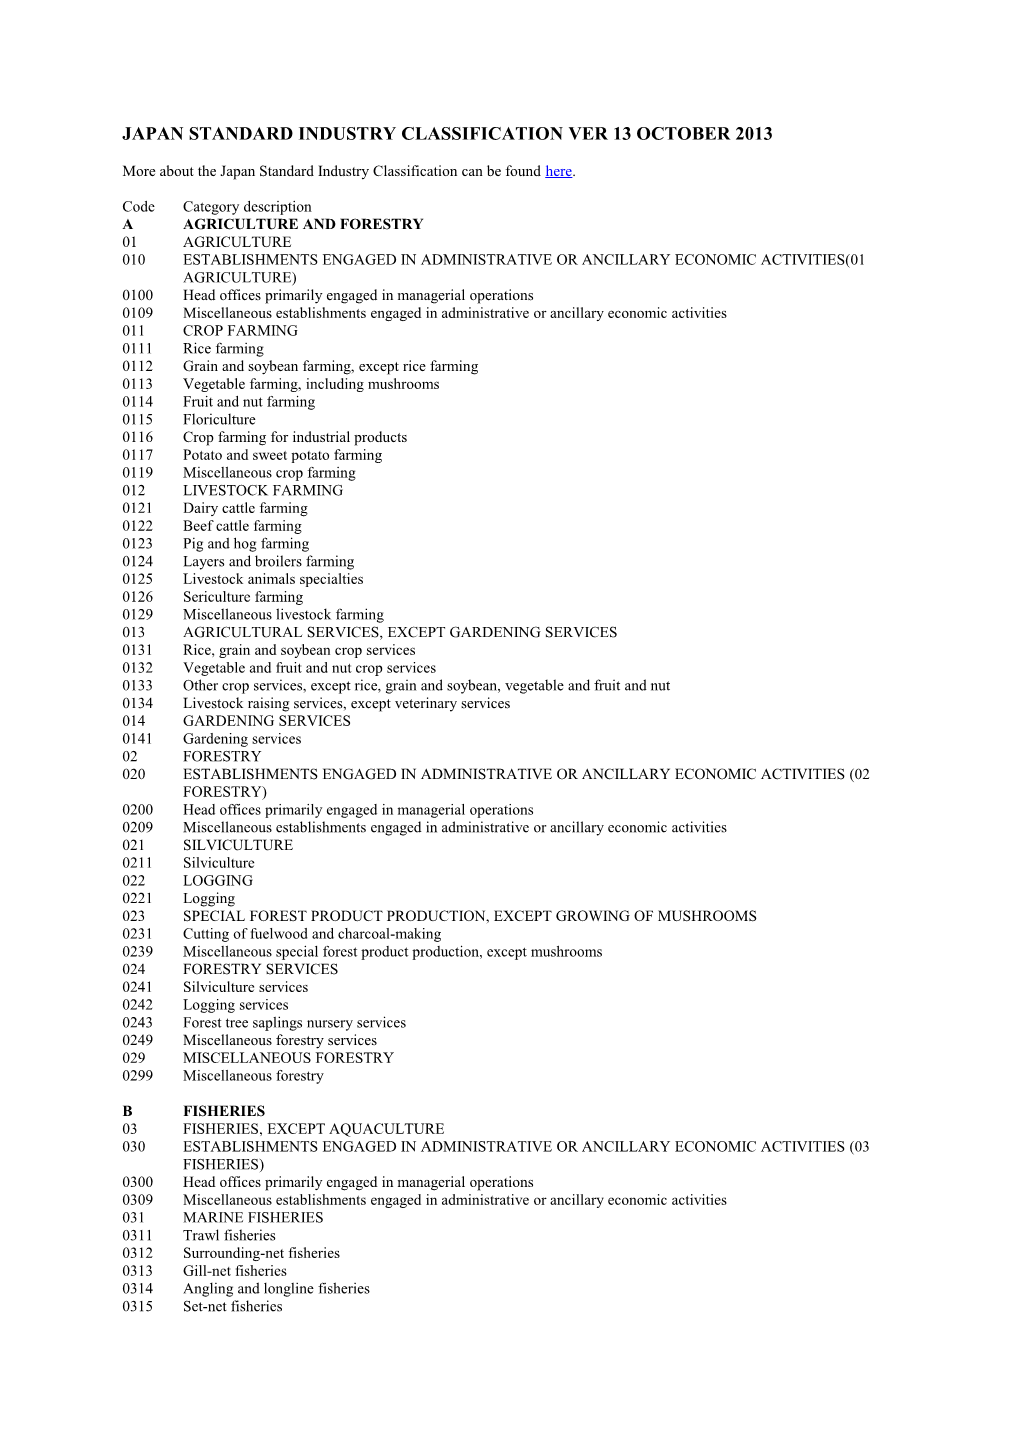 Japan Standard Industry Classification Ver 13 October 2013